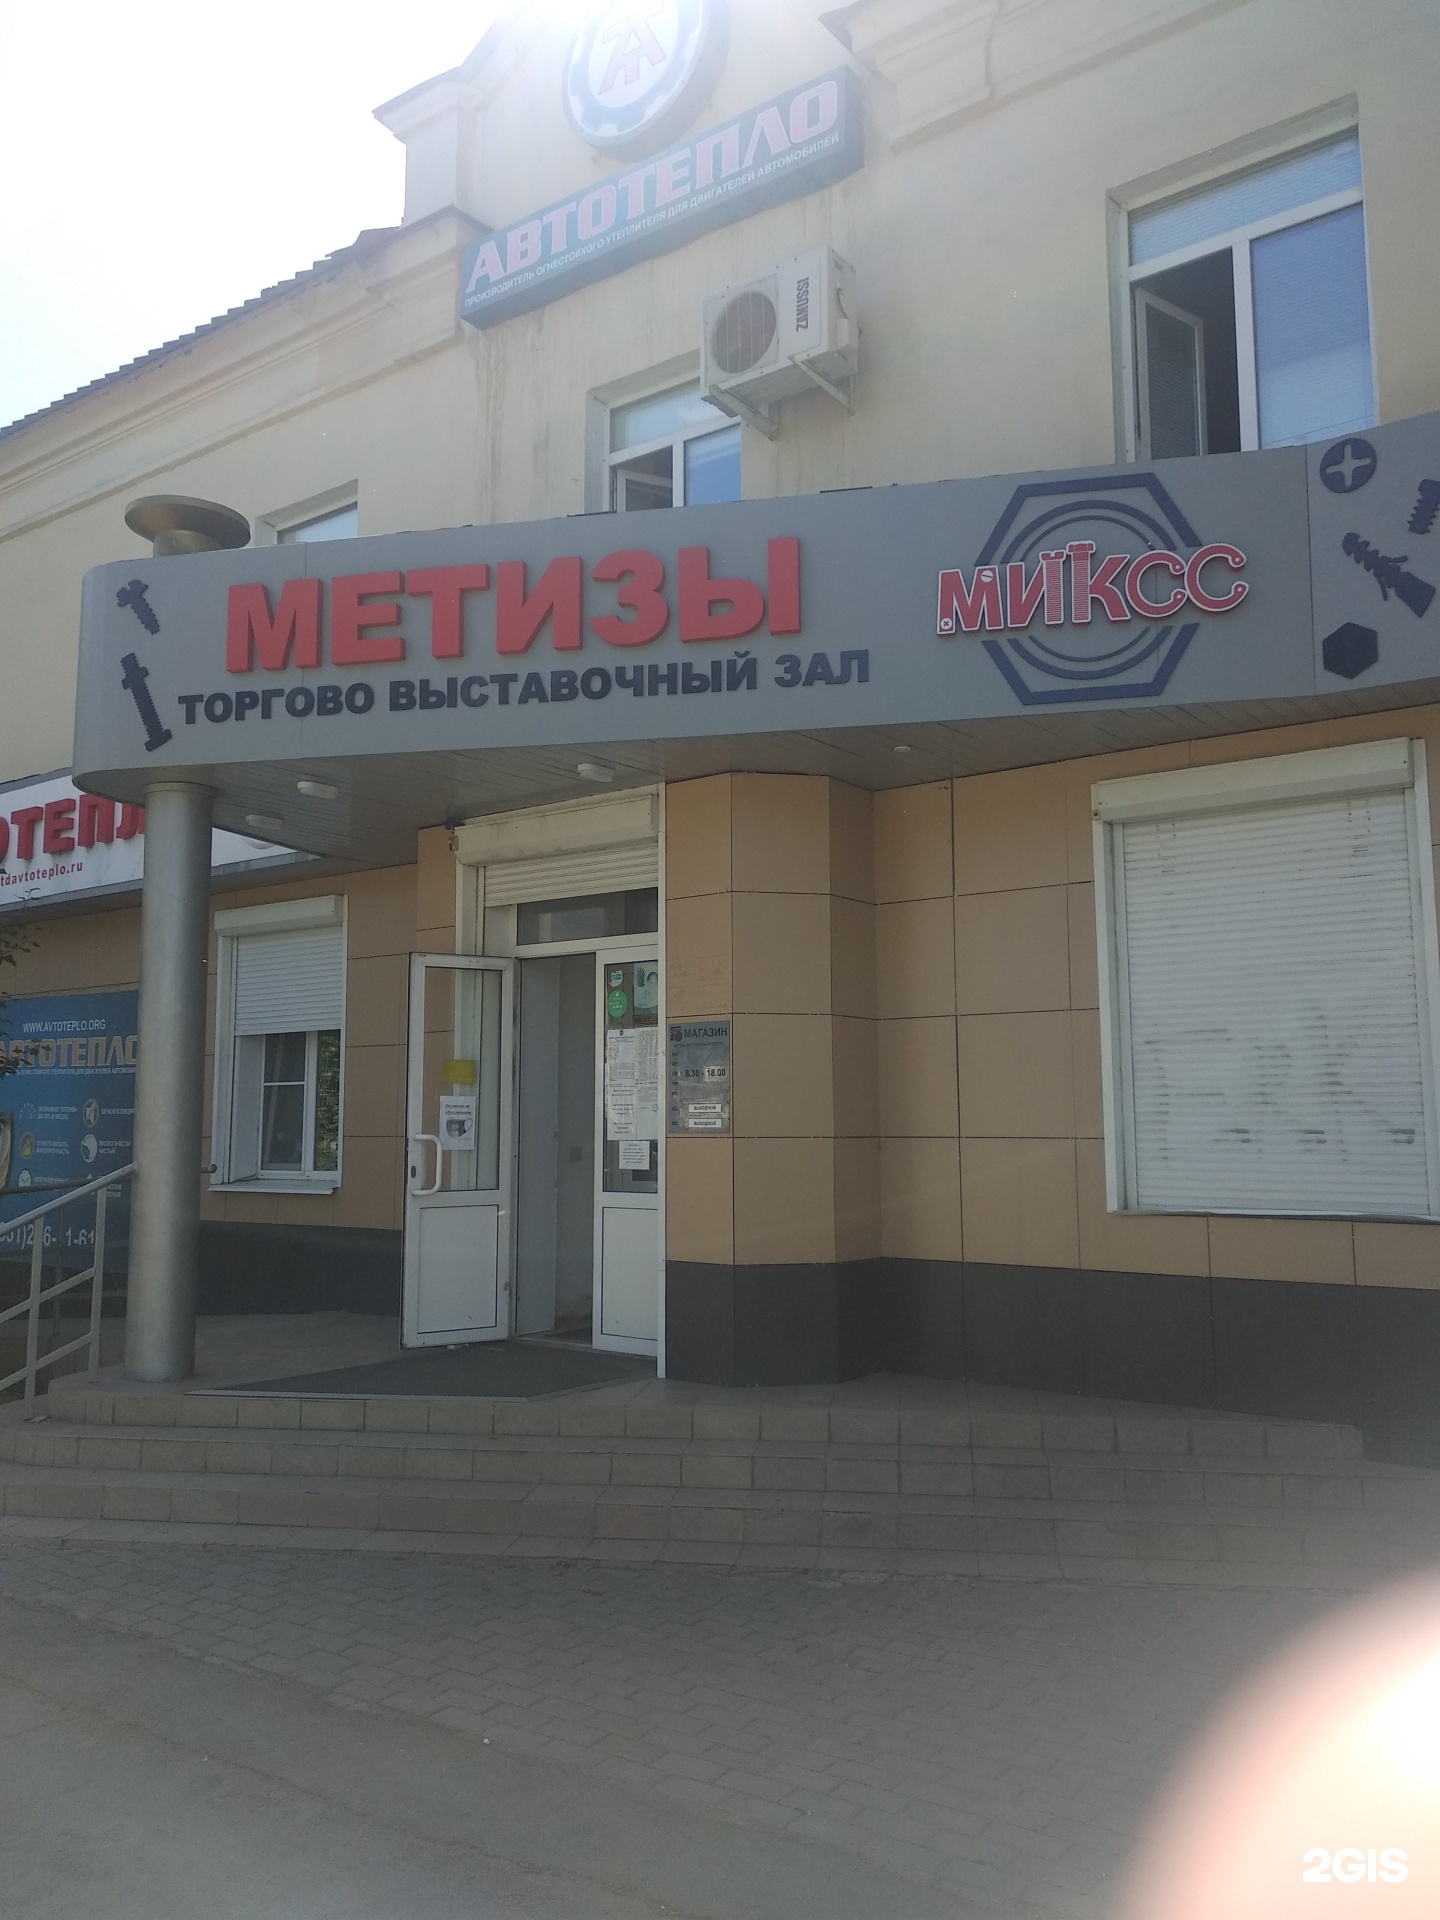 Интерком Лада Интернет Магазин Челябинск